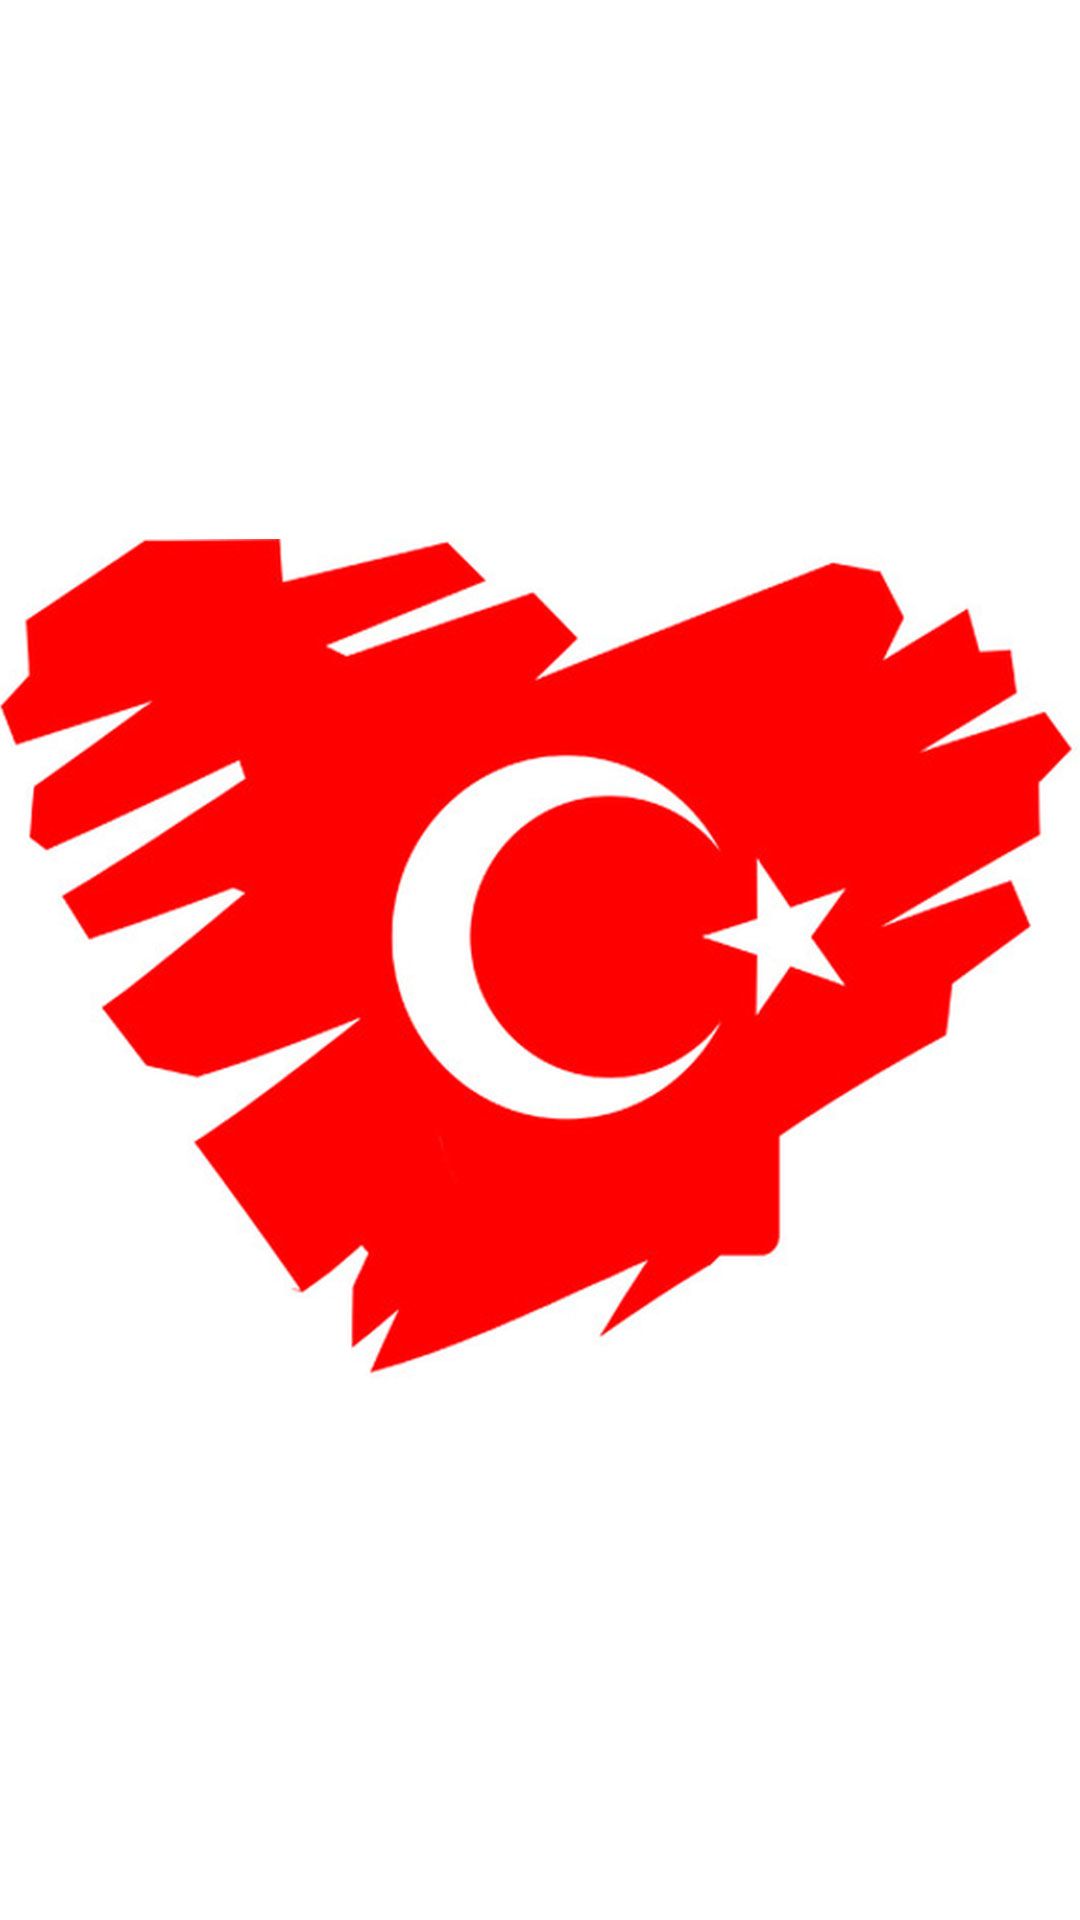 Kalpli turk bayragi 9